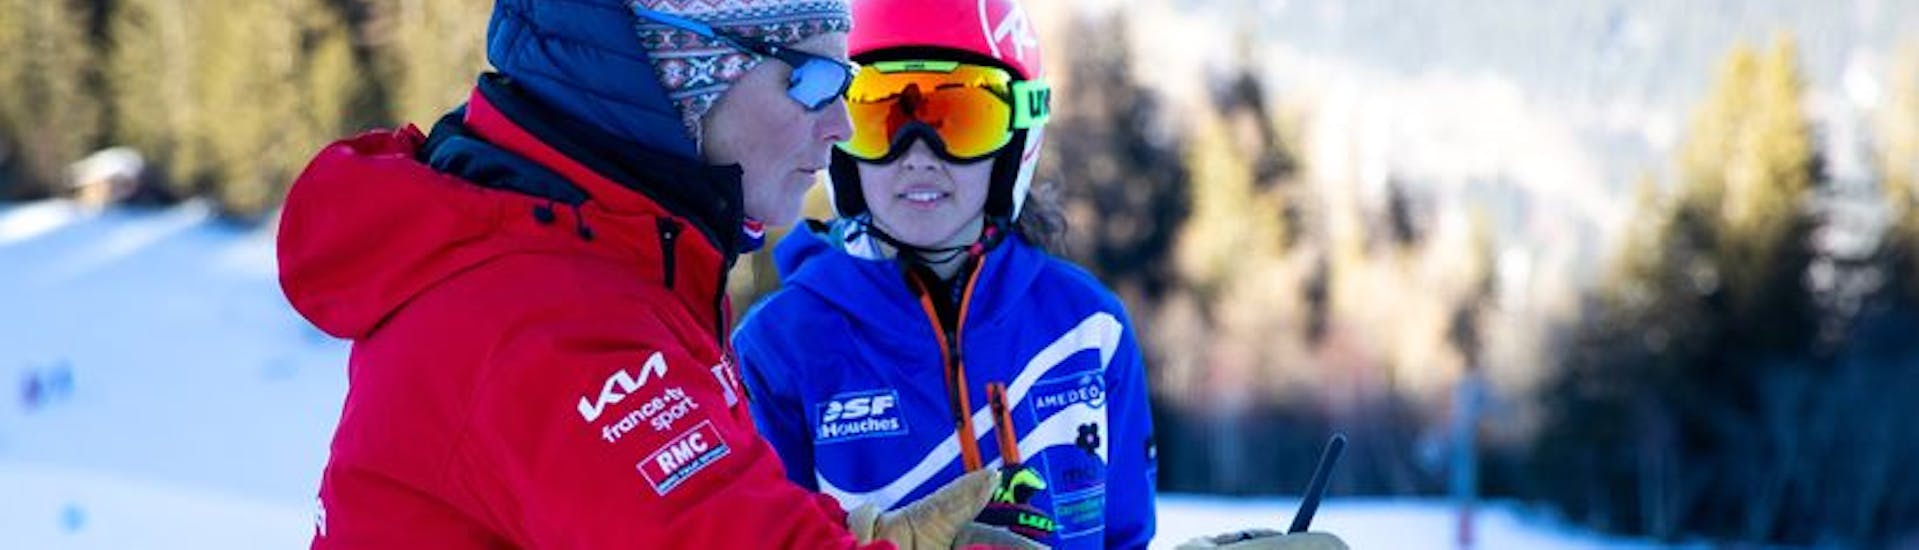 Privé skilessen voor kinderen vanaf 3 jaar voor alle niveaus met ESF Les Houches.